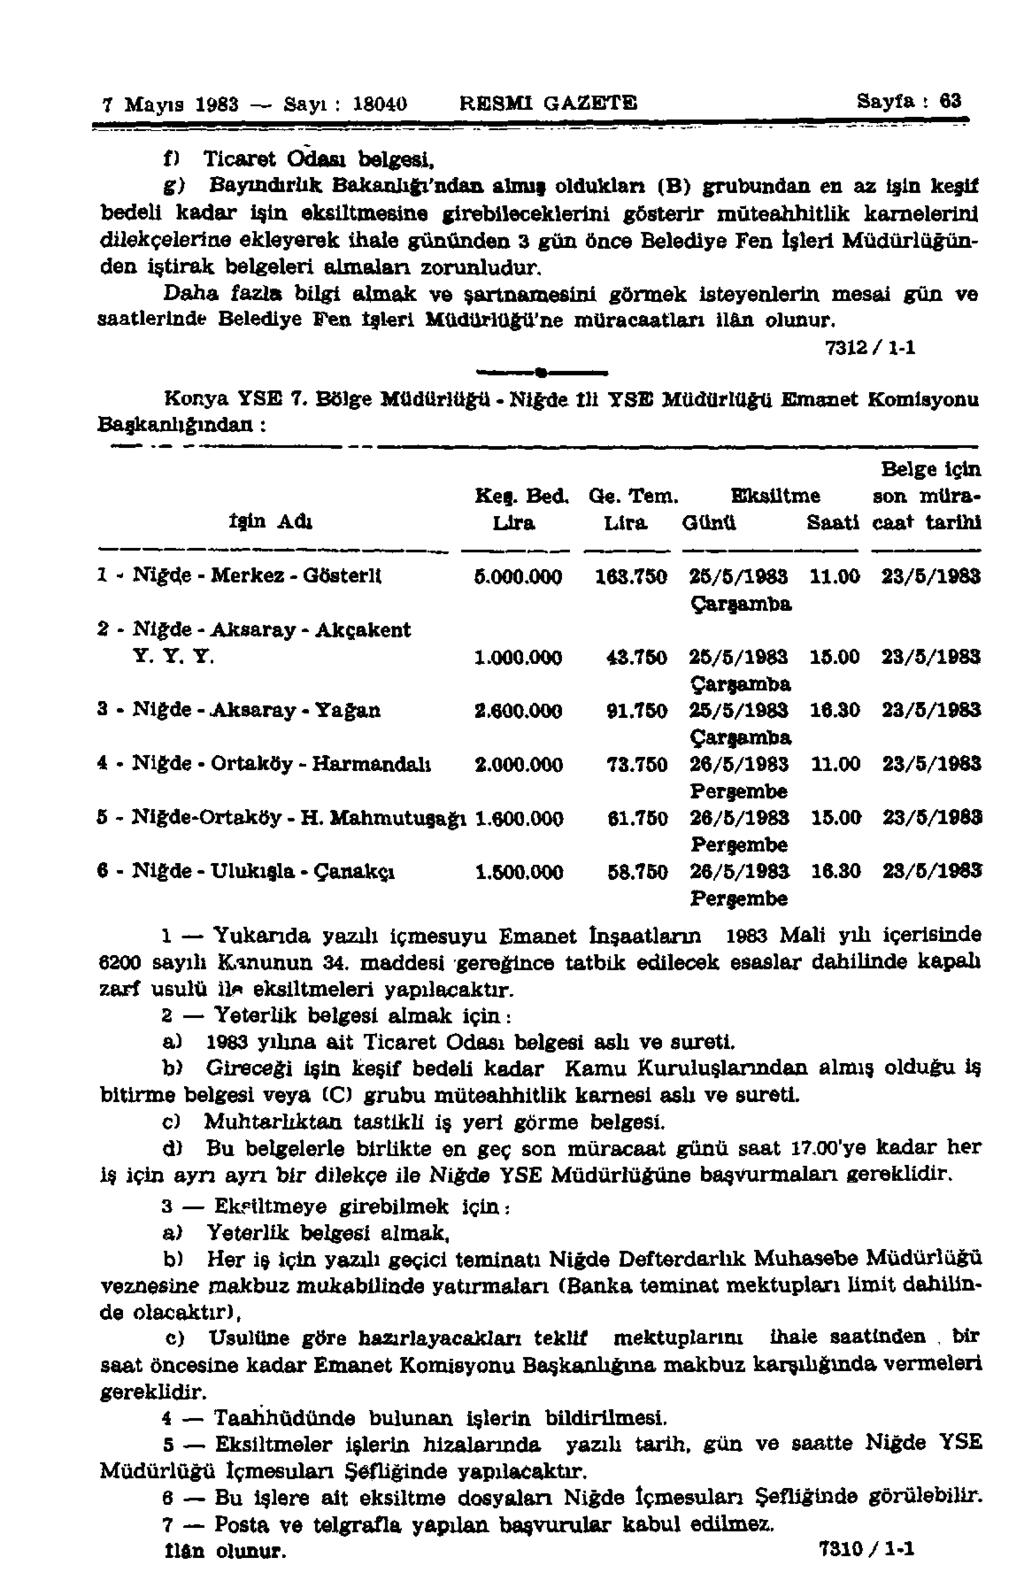 7 Mayıs 1983 Sayı : 18040 RESMİ GAZETE Sayfa : 63 f) Ticaret Odası belgesi, g) Bayındırlık Bakanlığı'ndan almış oldukları (B) grubundan en az işin keşli bedeli kadar işin eksiltmesine